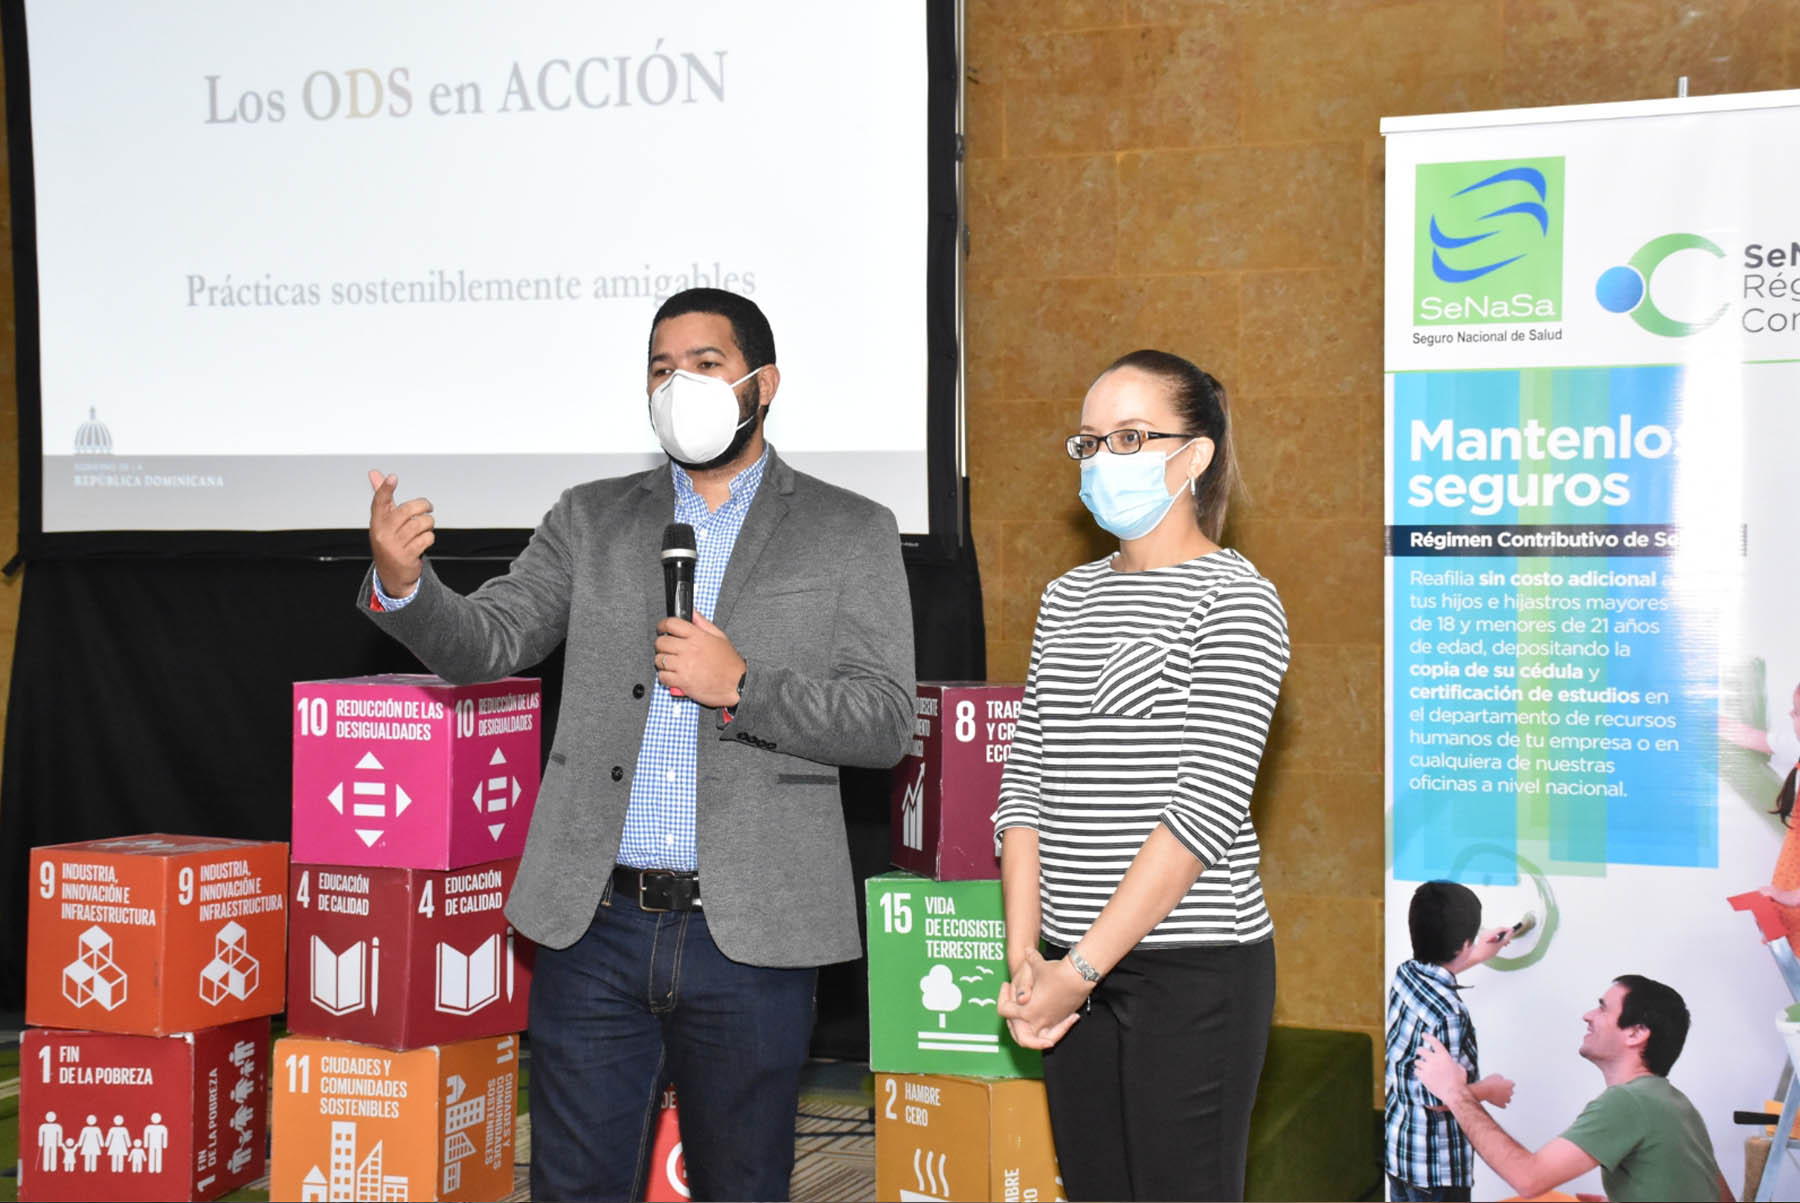 La presentación versó sobre los antecedentes de los Objetivos de Desarrollo Sostenible, sus objetivos y metas y la situación de la Agenda 2030 en la República Dominicana.